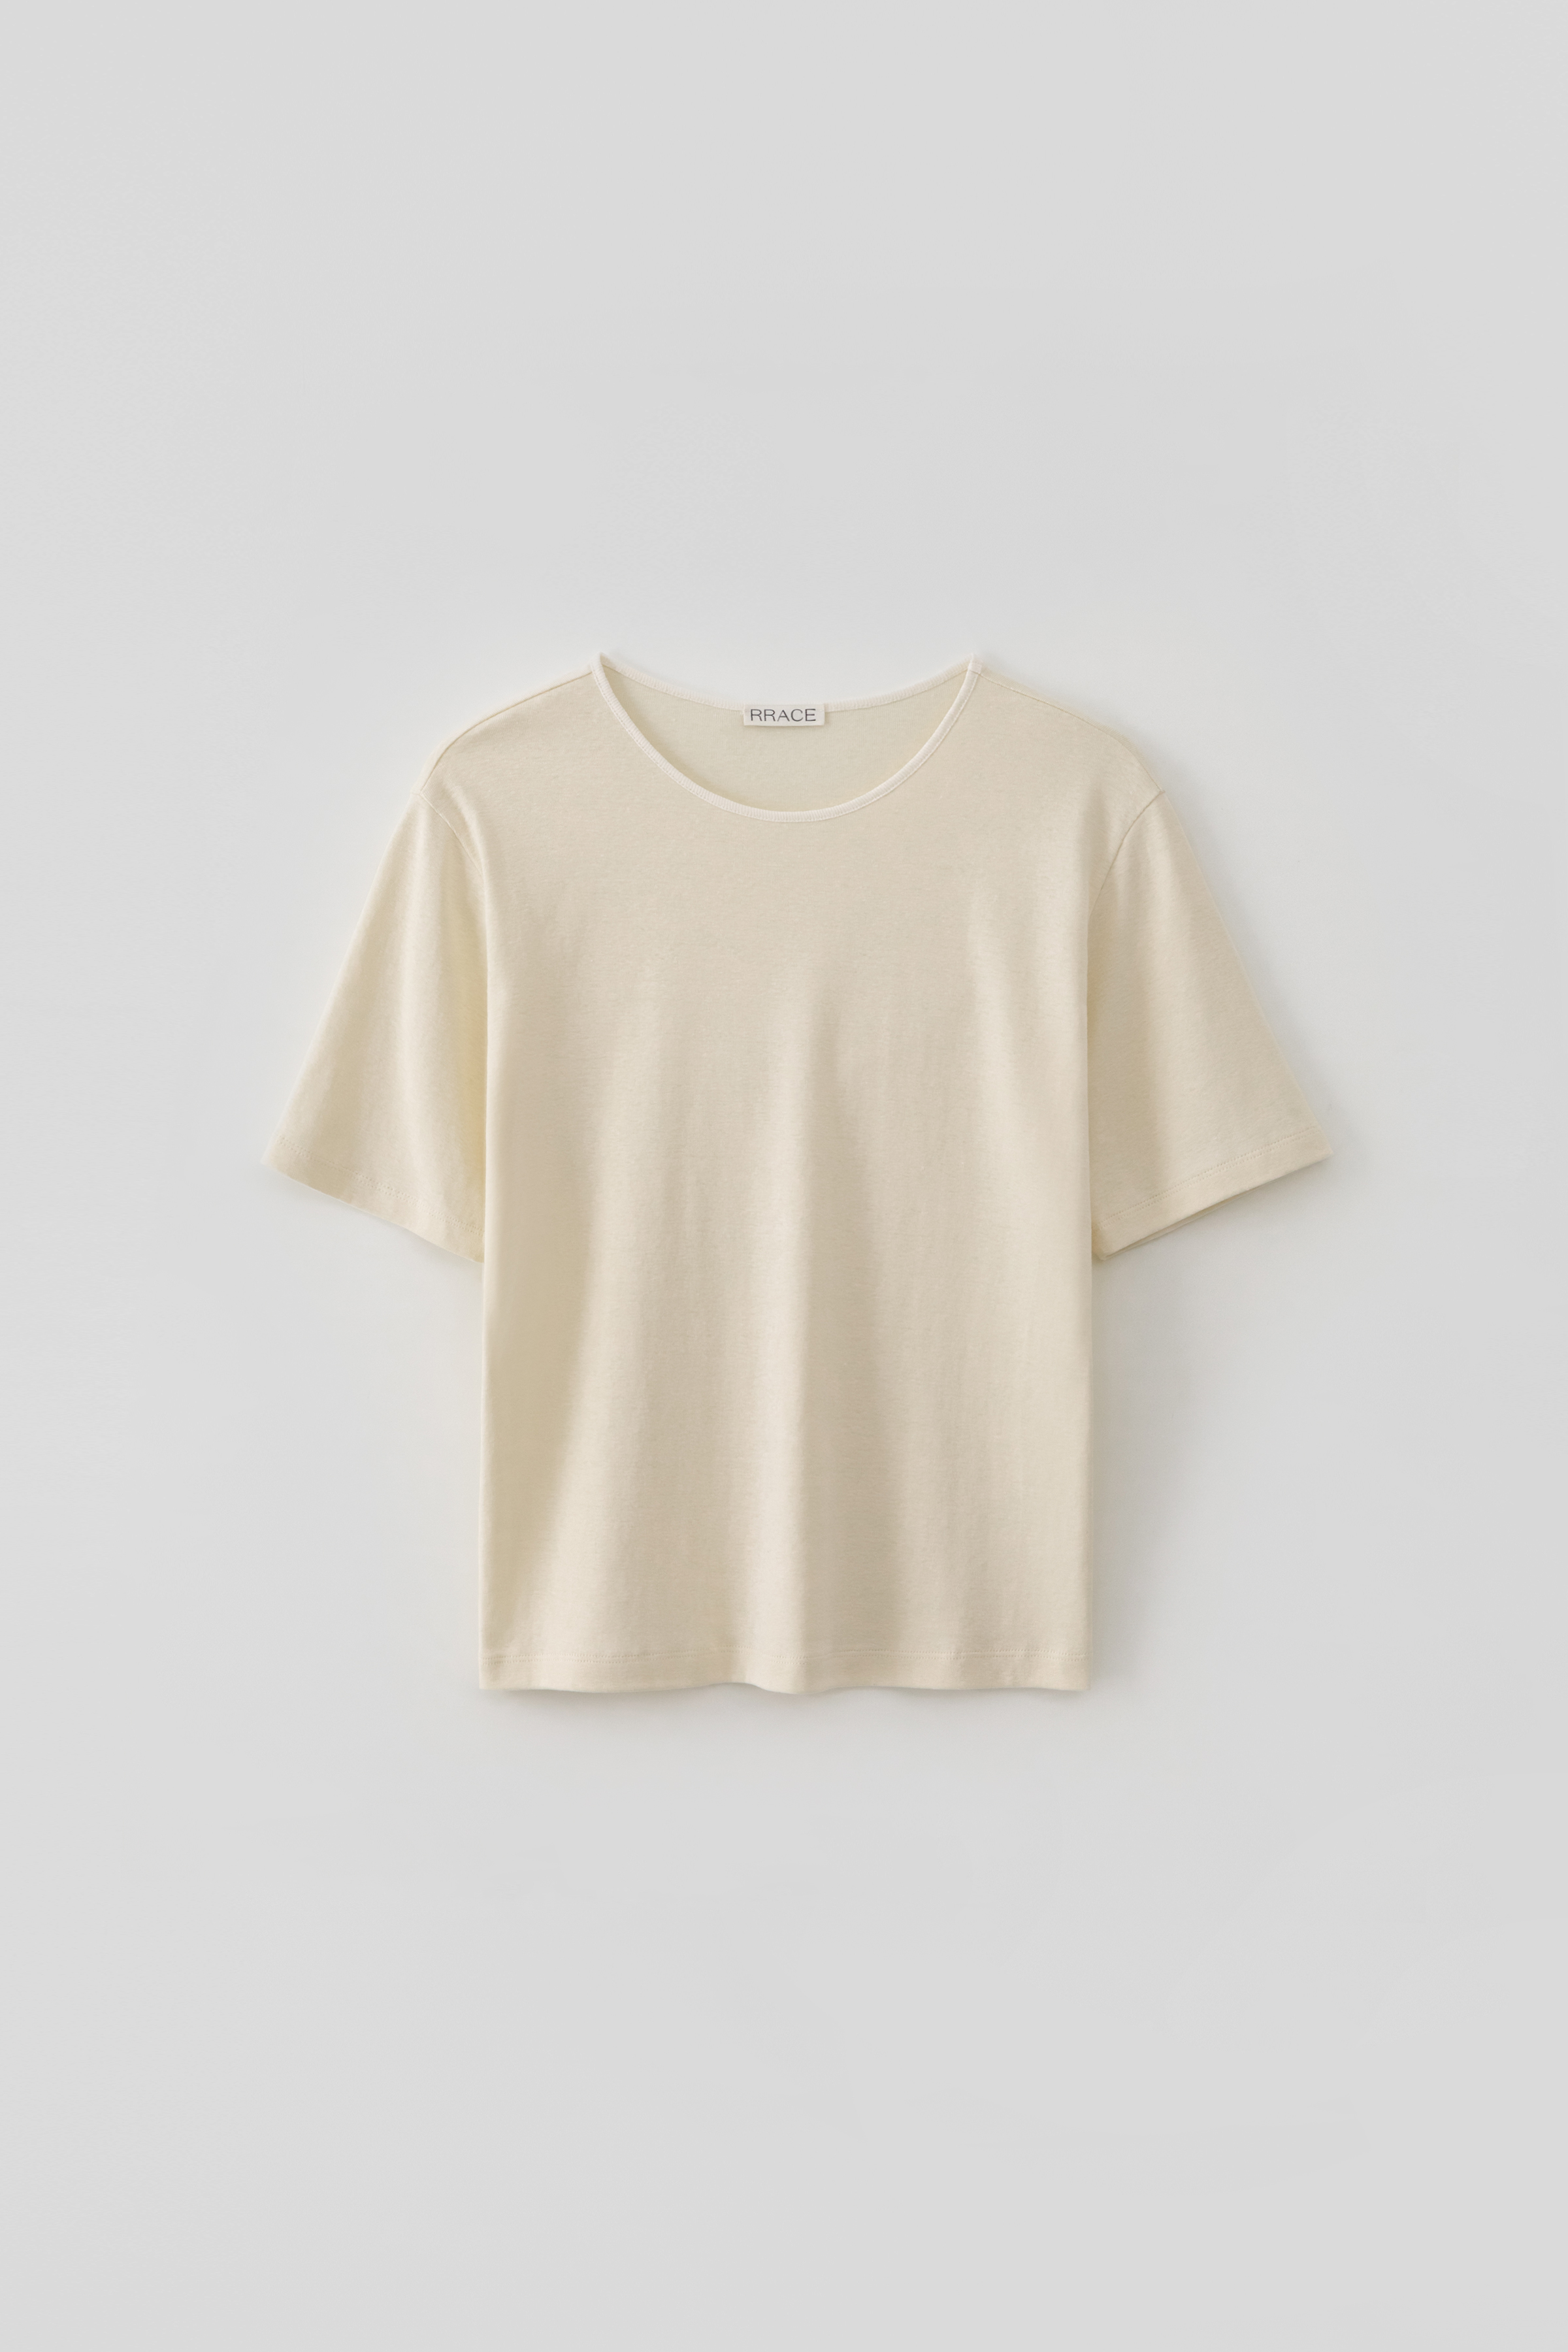 Binding Neck T-Shirts_Cream